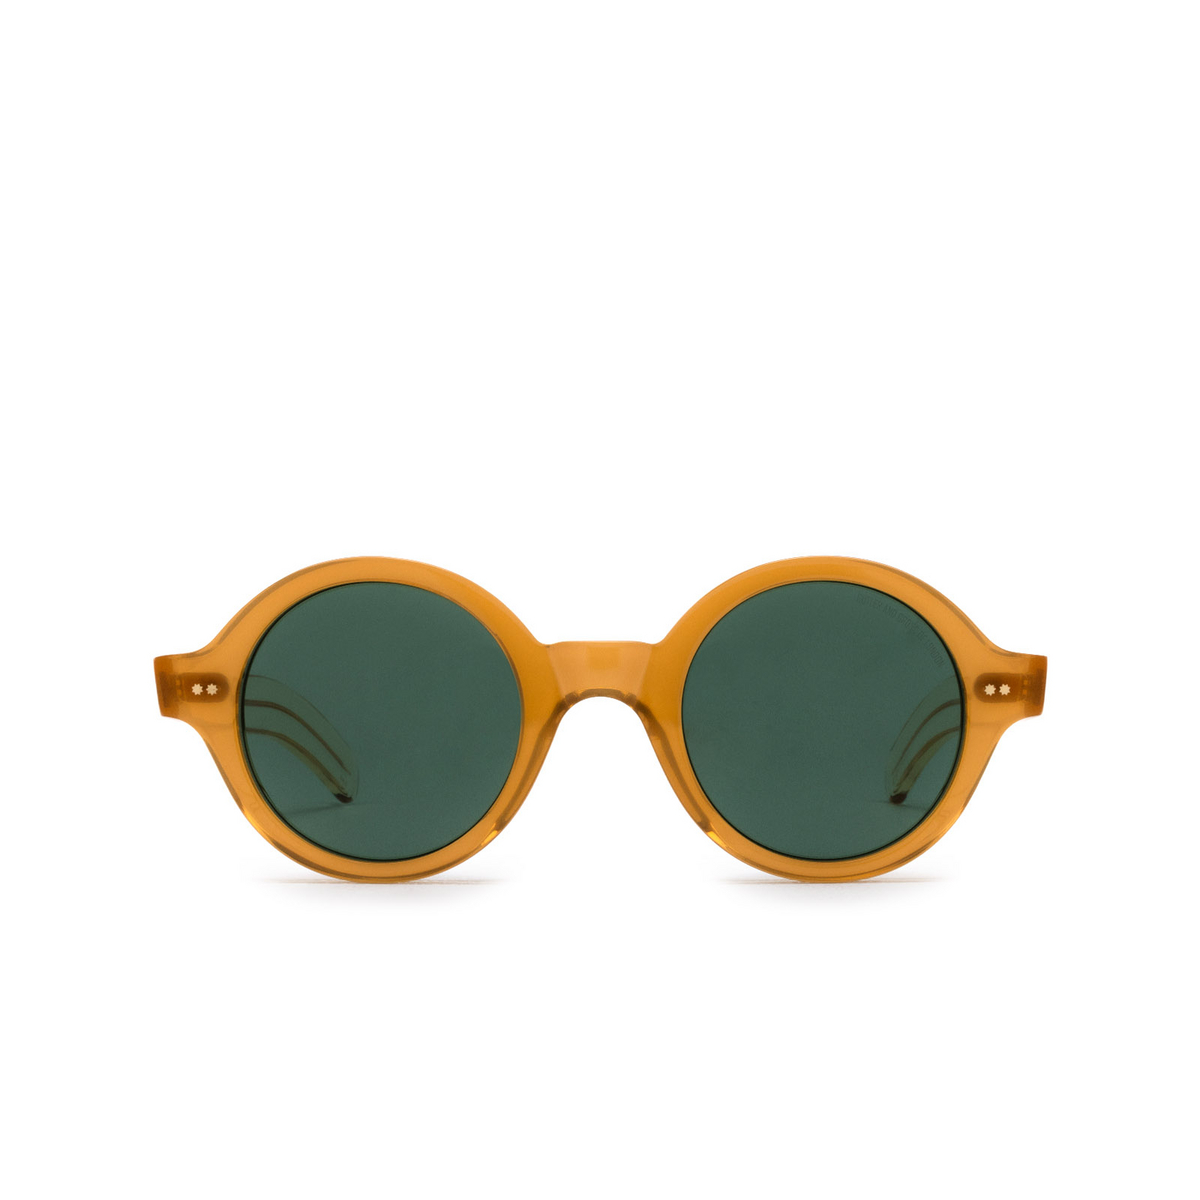 Cutler and Gross 1396 Sunglasses 04 Bi-Layer Butterscotch - front view